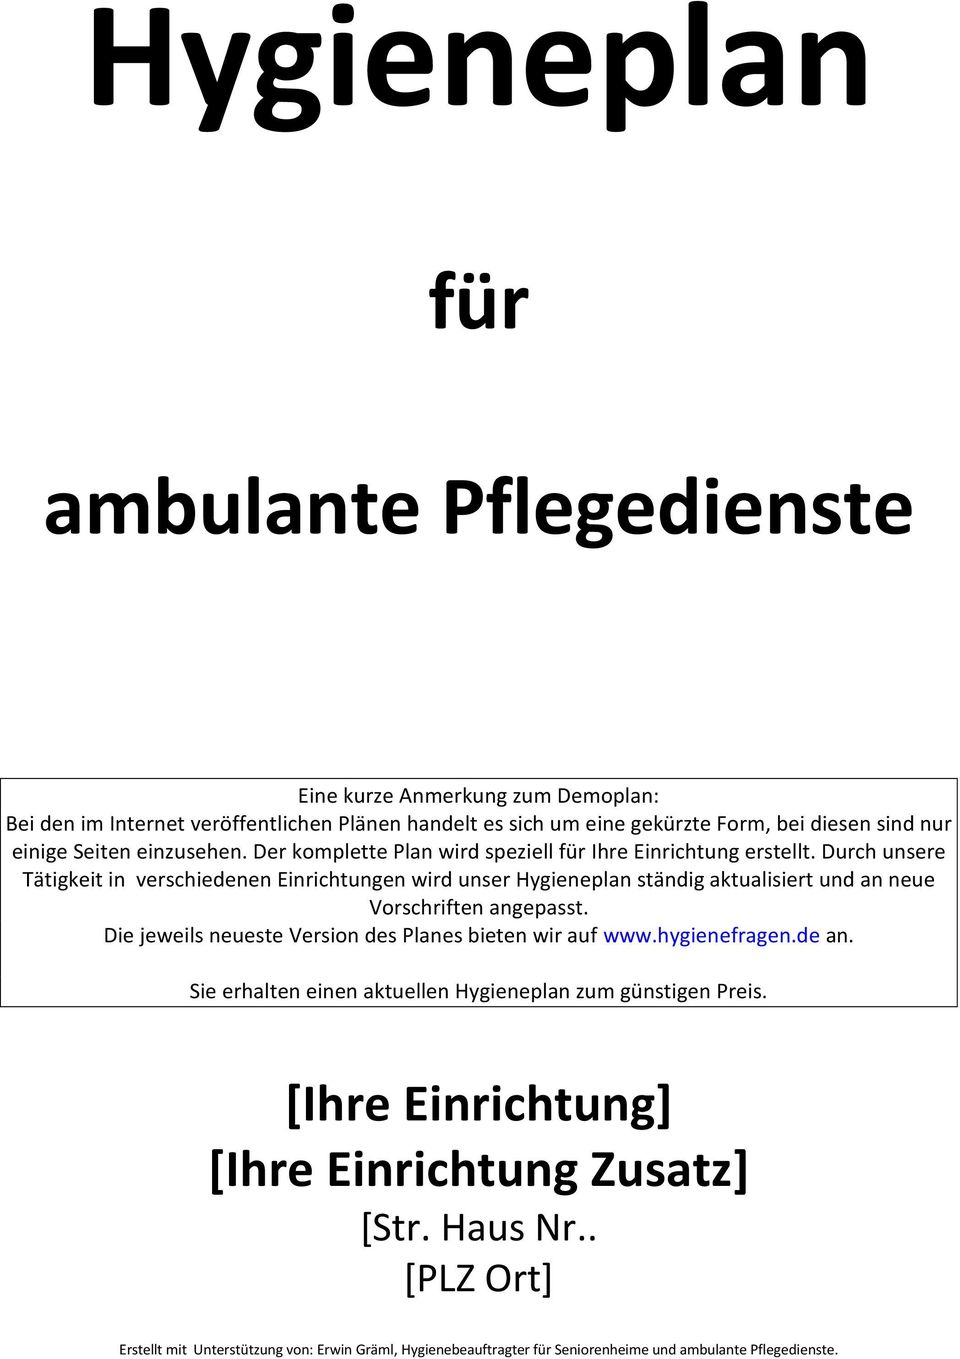 Hygieneplan Fur Ambulante Pflegedienste Pdf Free Download